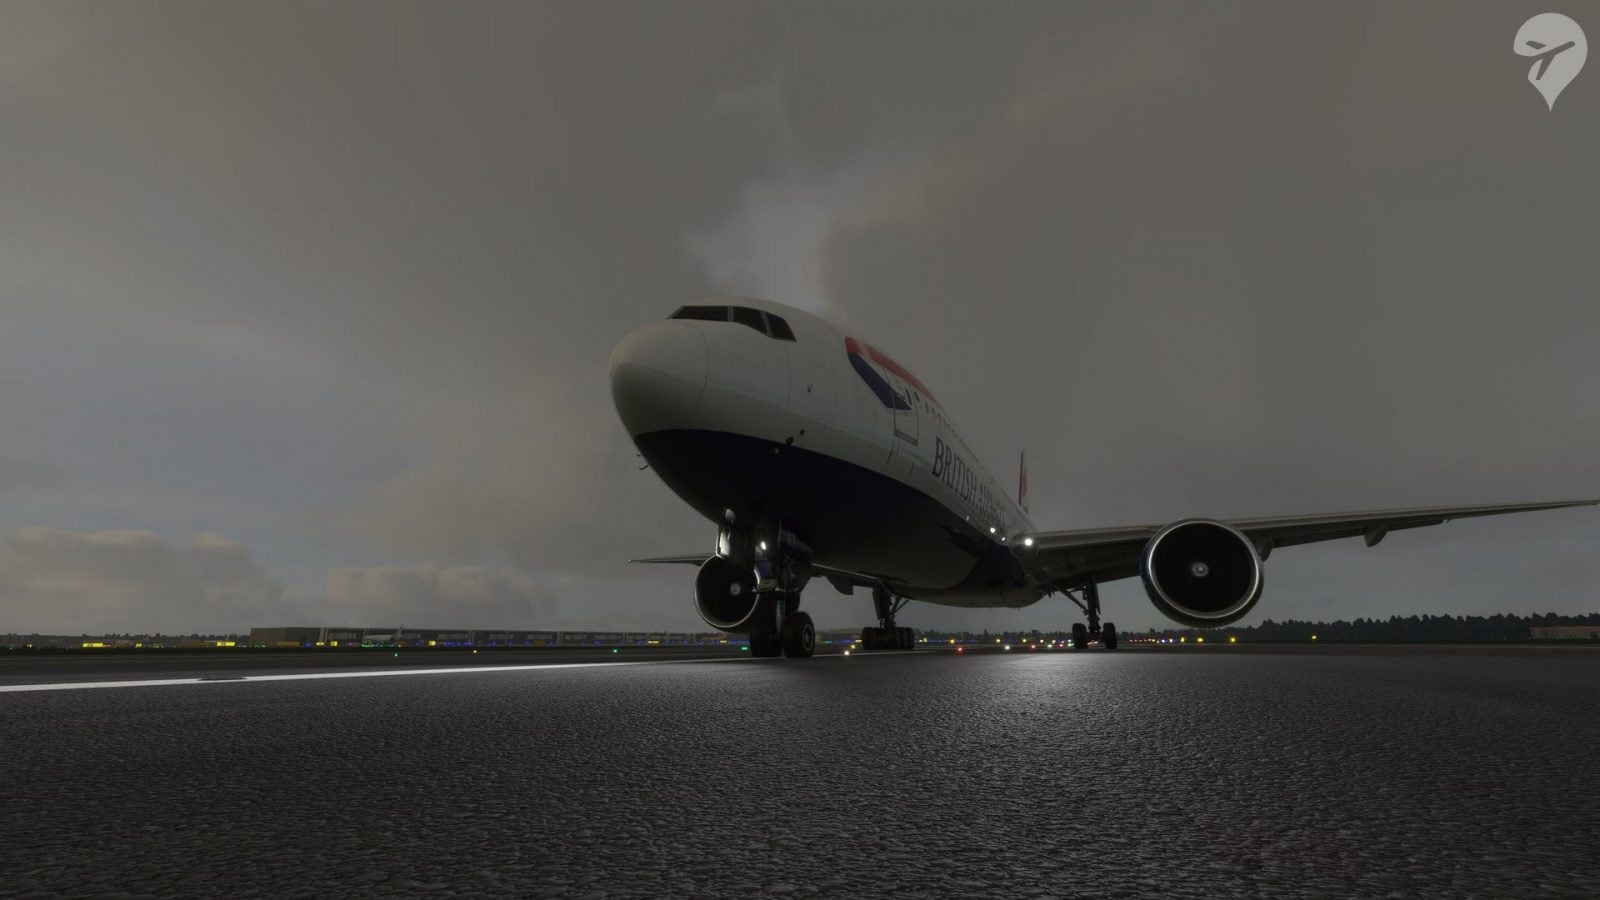 Review: Captain Sim 777-200ER for Microsoft Flight Simulator